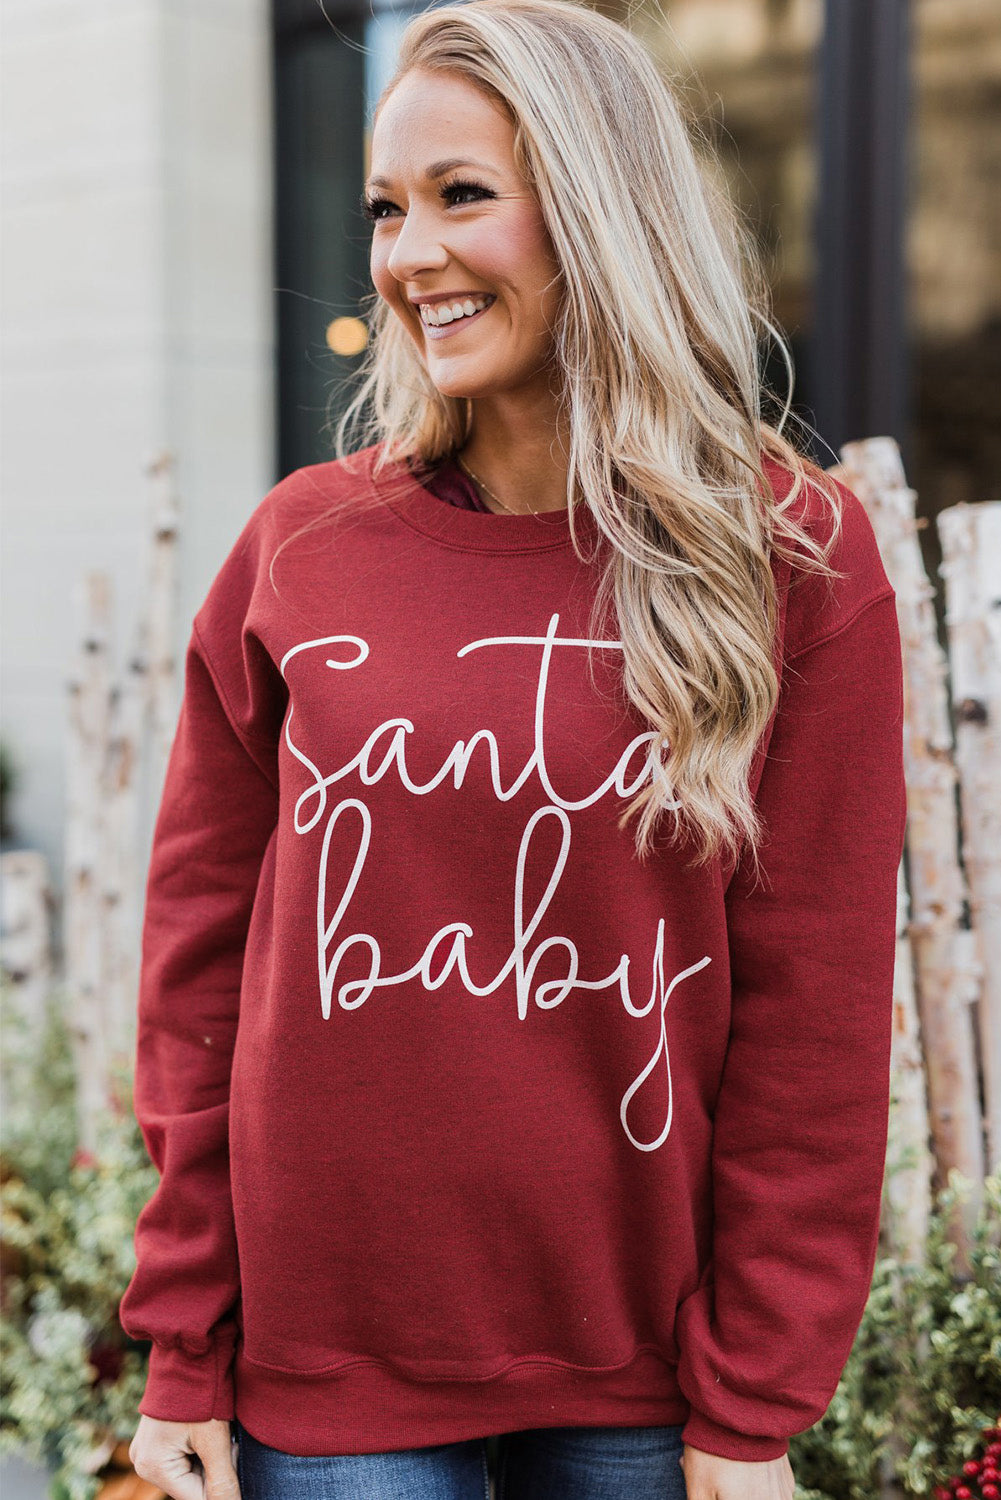 Pullover-Sweatshirt mit Weihnachtsmann-Baby-Print